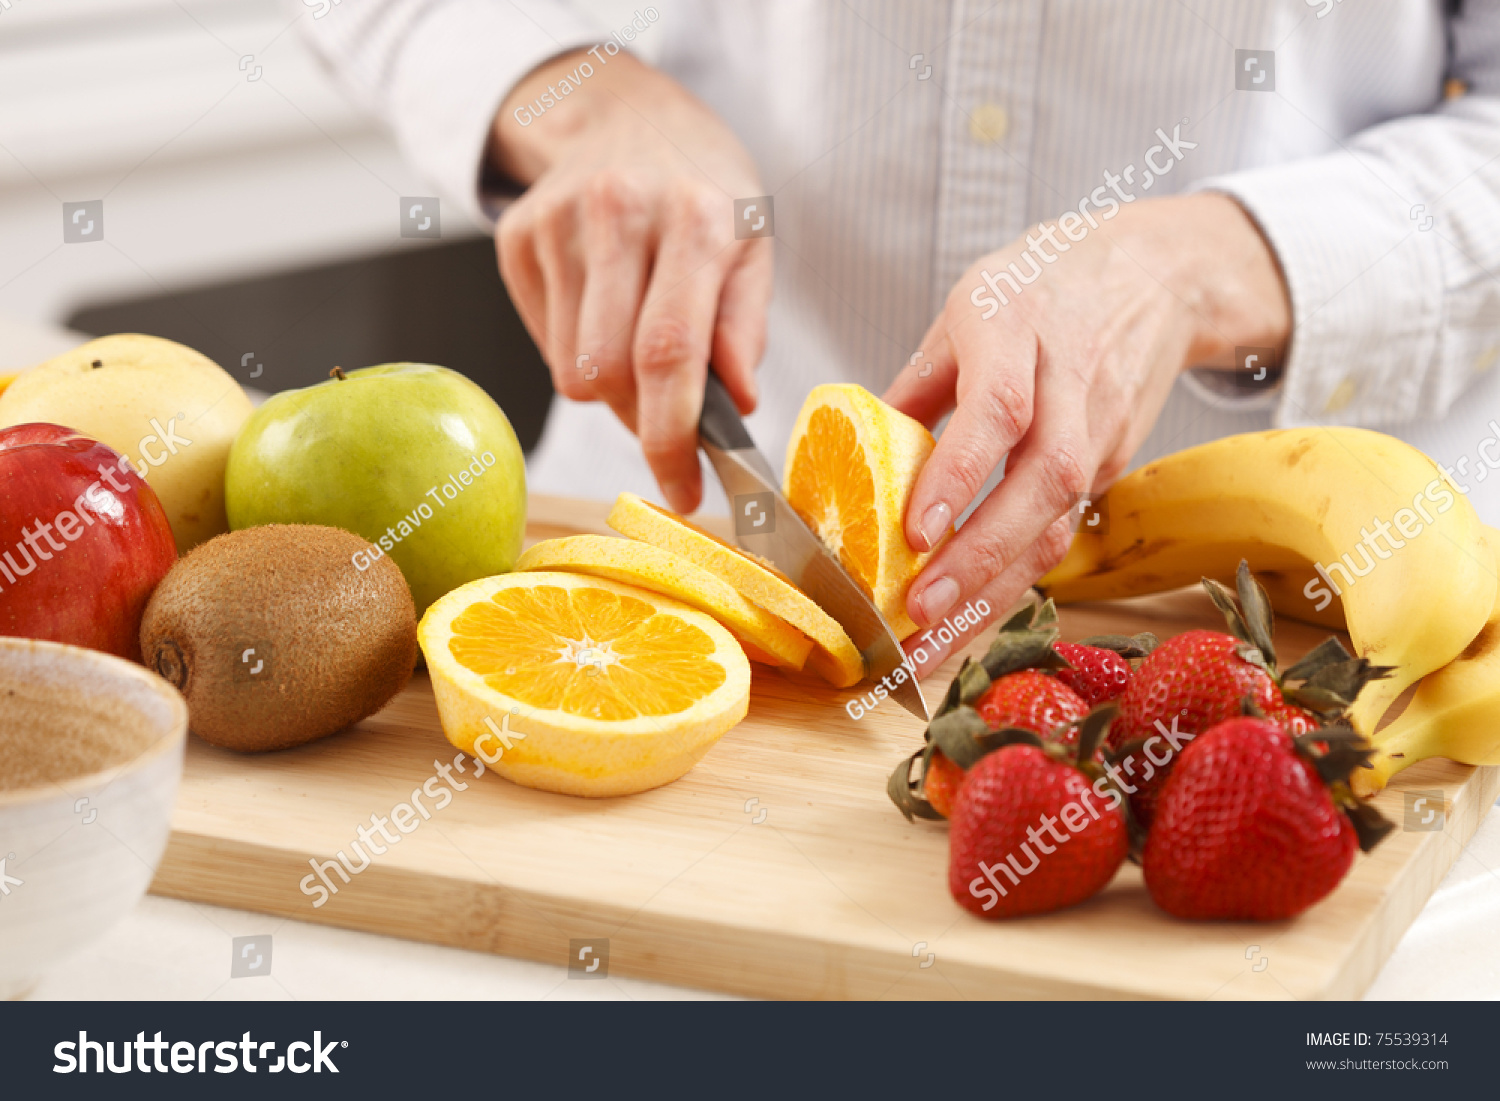 Woman Kitchen Cutting Fruits Stock Photo 75539314 ...